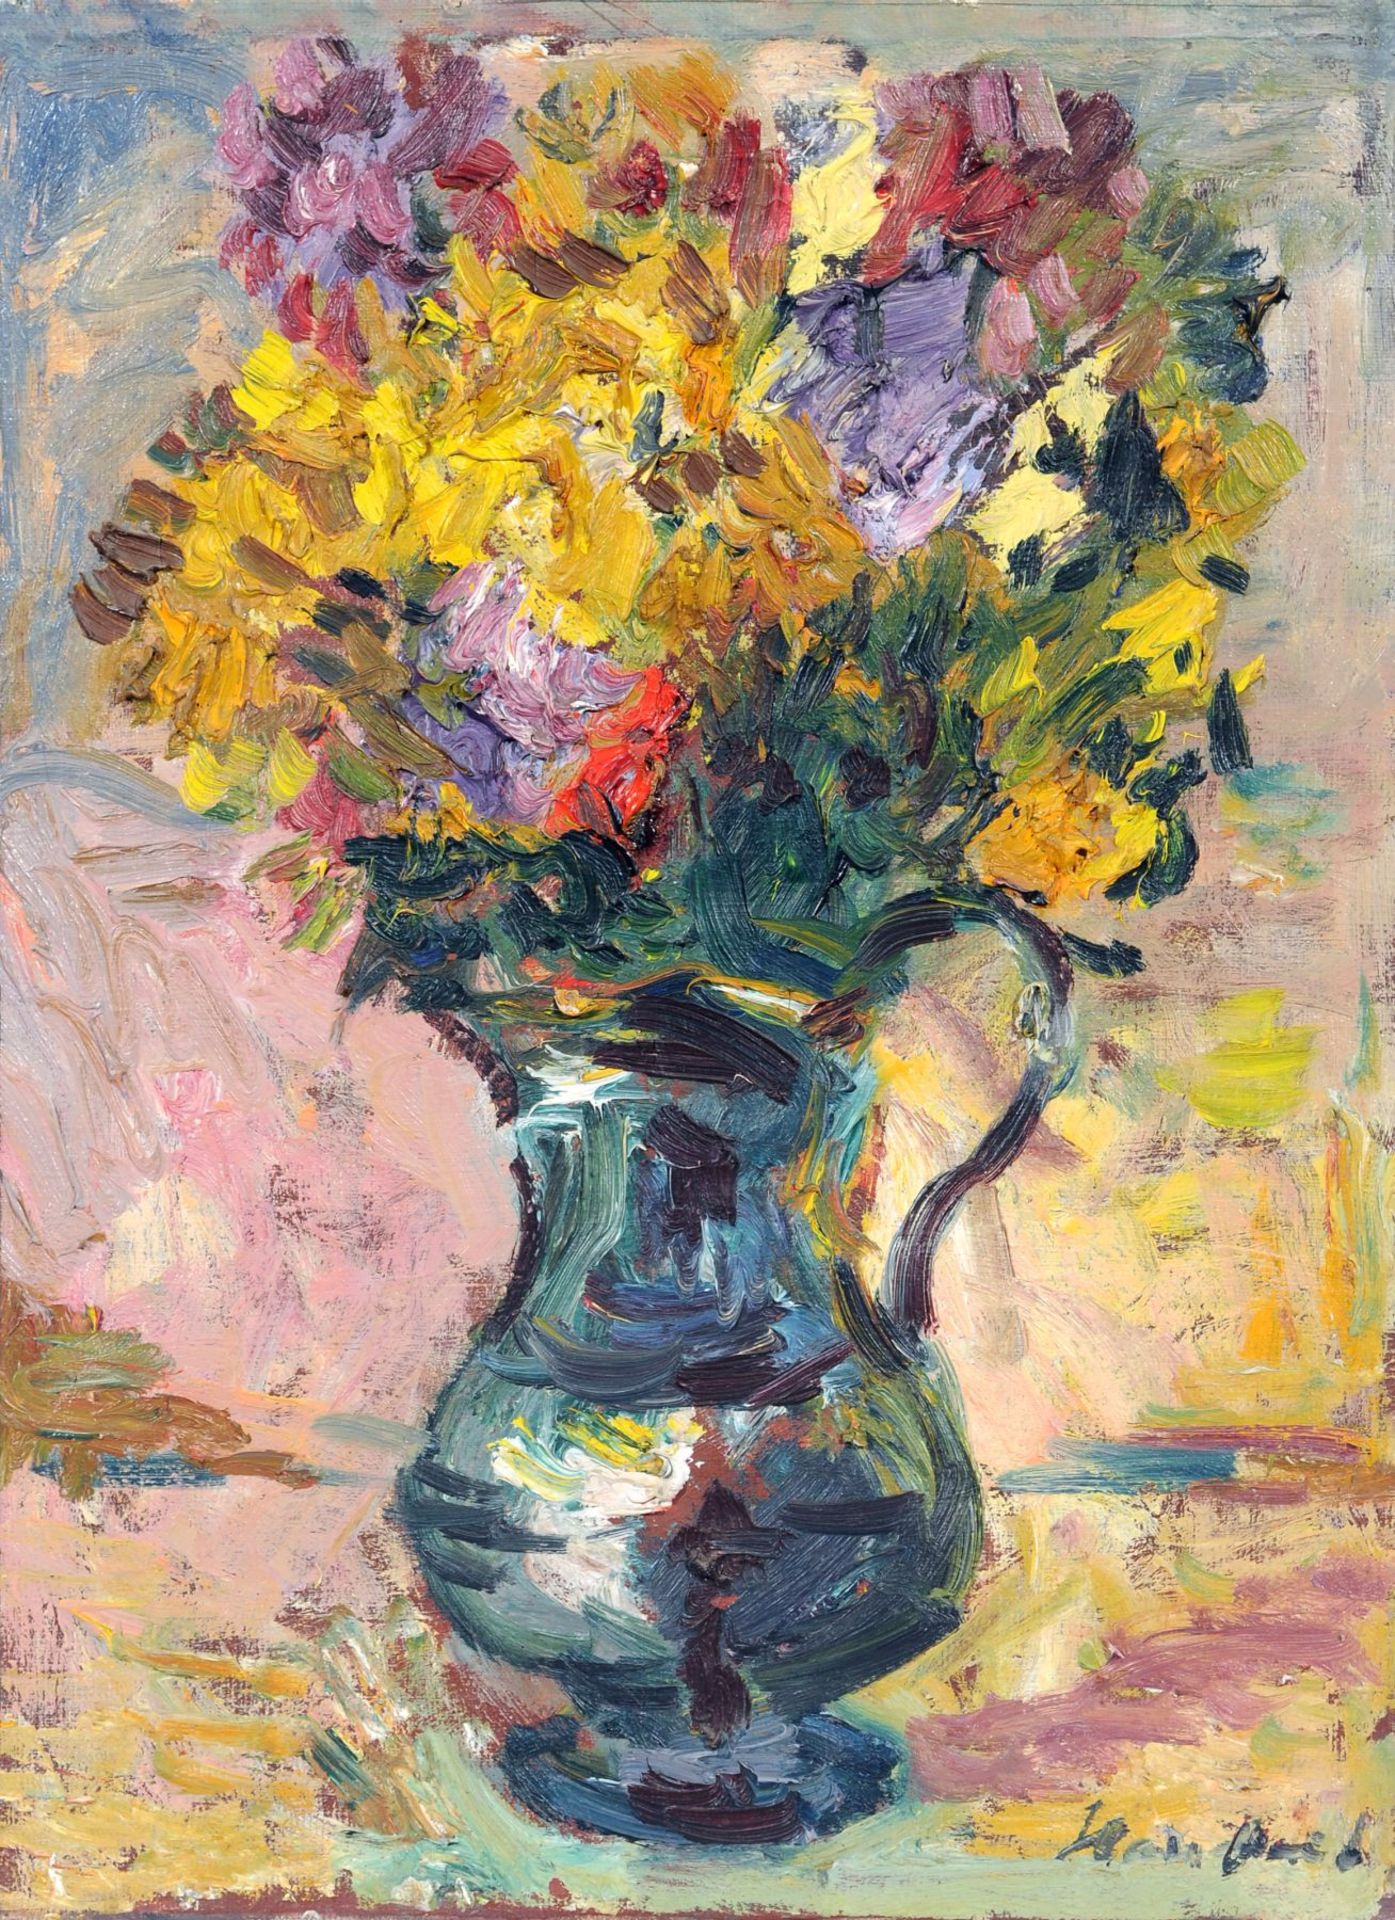 Ernst Hassebrauk "Stilleben" (Sommerblumenstrauß in Vase). Wohl 1940er Jahre. Öl auf Leinwand.